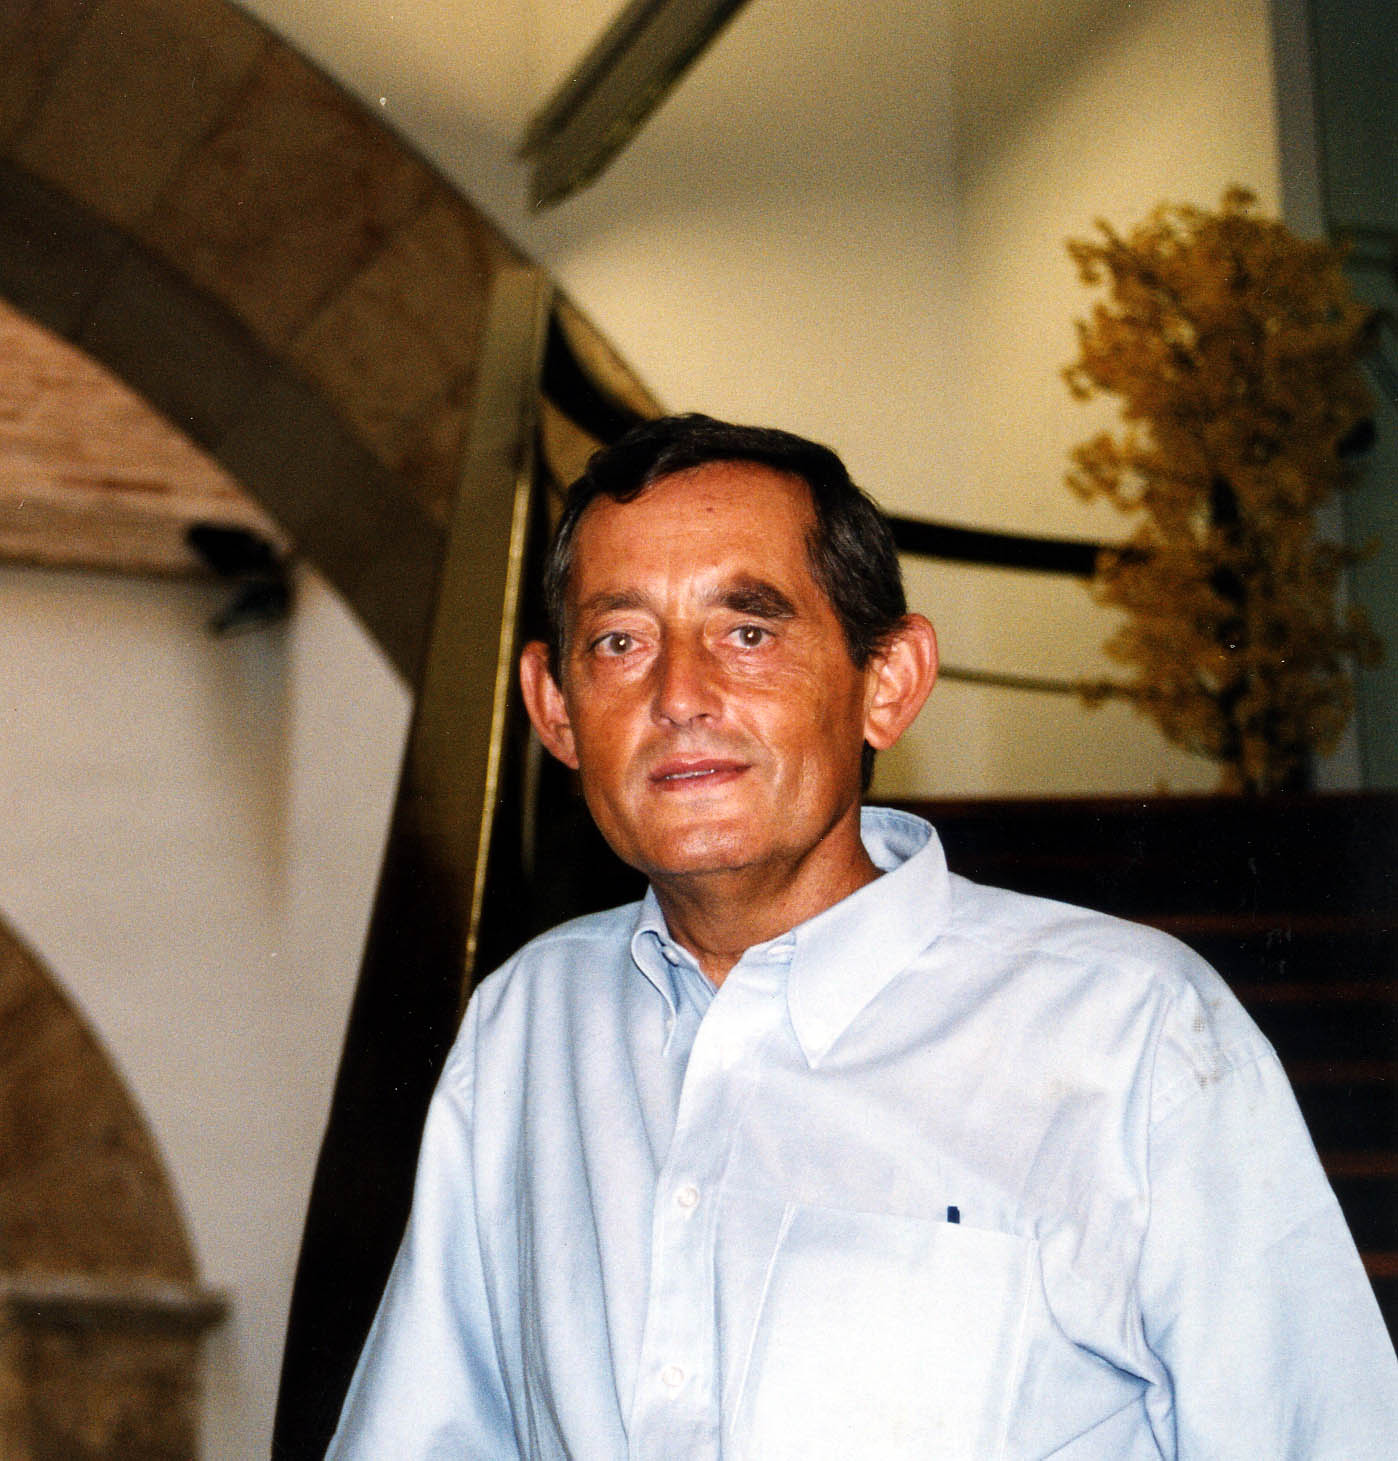 Miguel Delibes de Castro